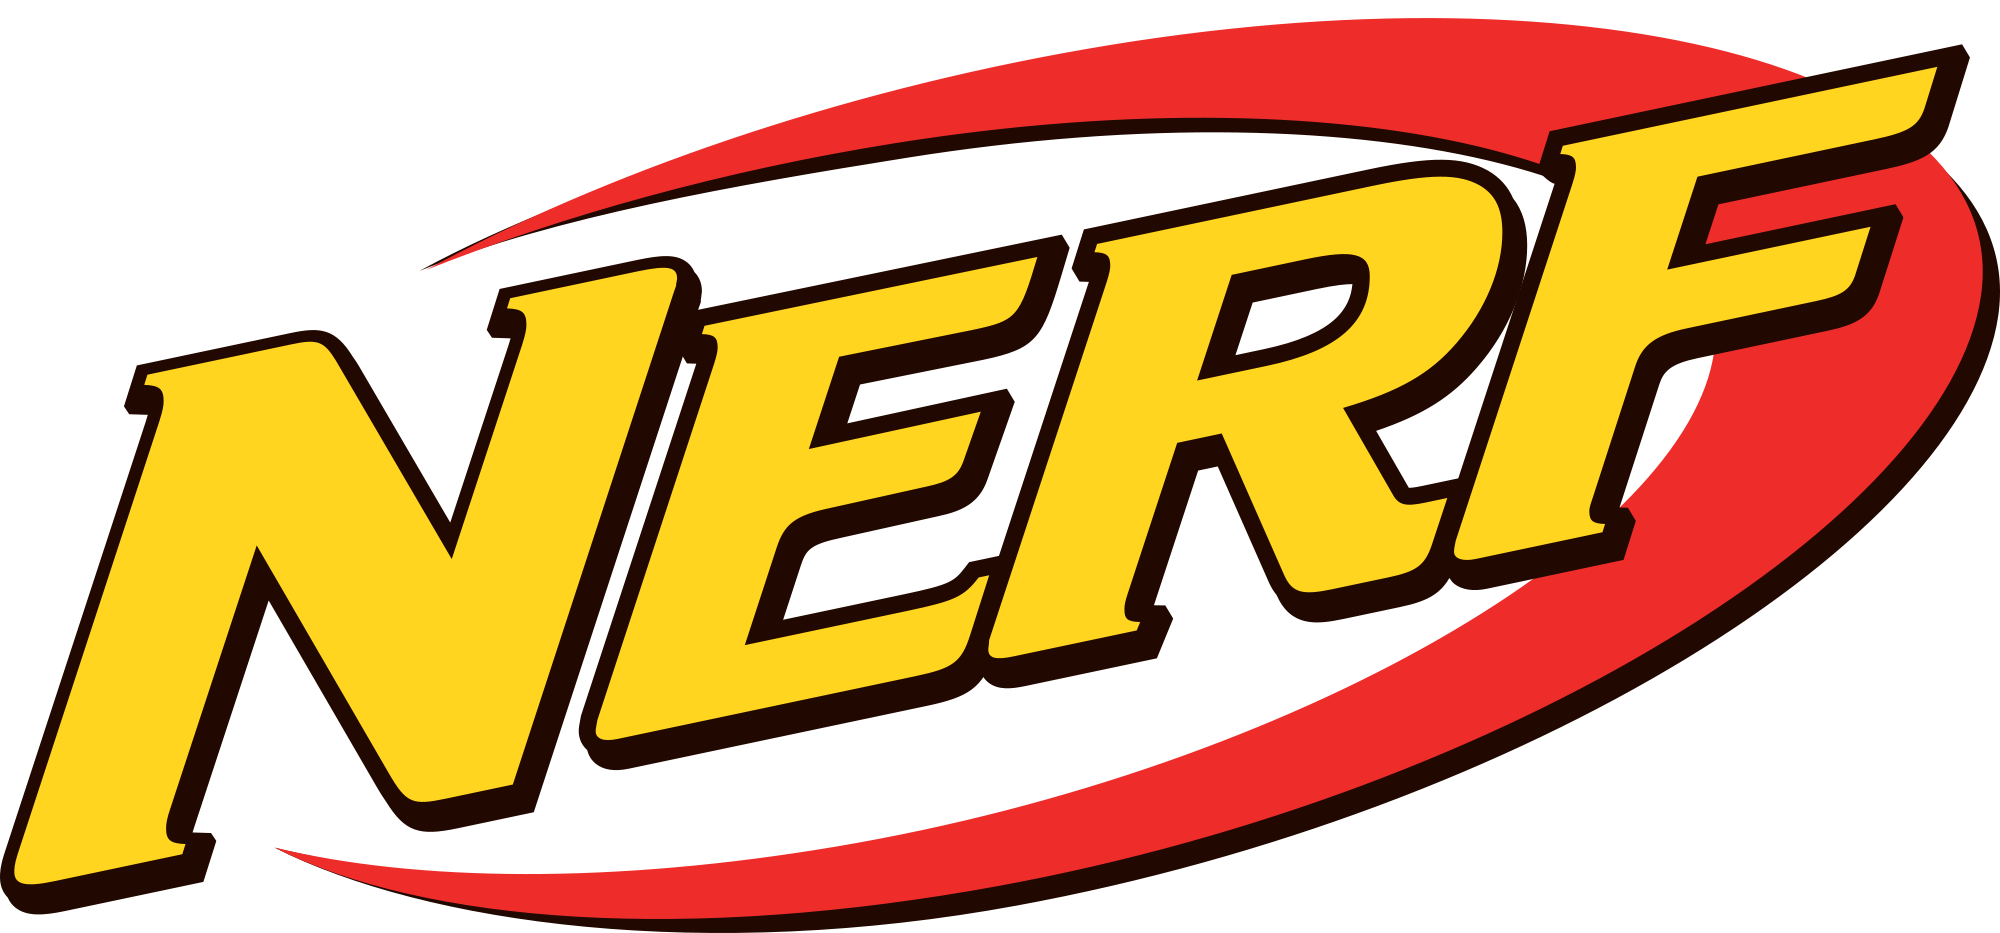 2000px-Nerf-logo-svg